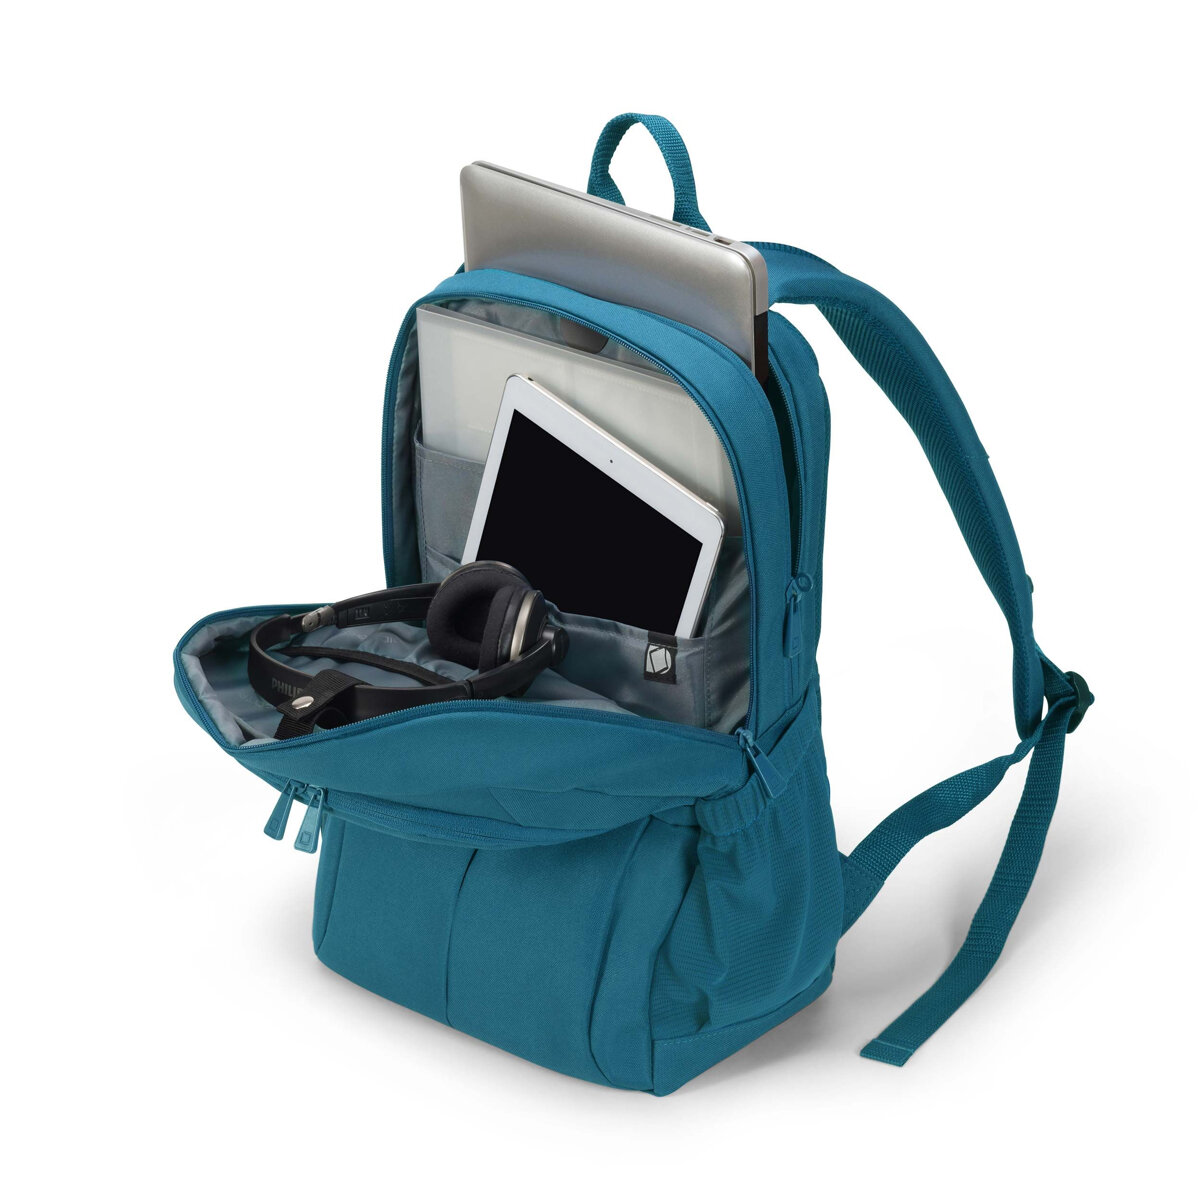 Plecak na laptopa Dicota Eco Scale 13-15,6 niebieski otwarty w którym znajduje się laptop, tablet oraz słuchawki